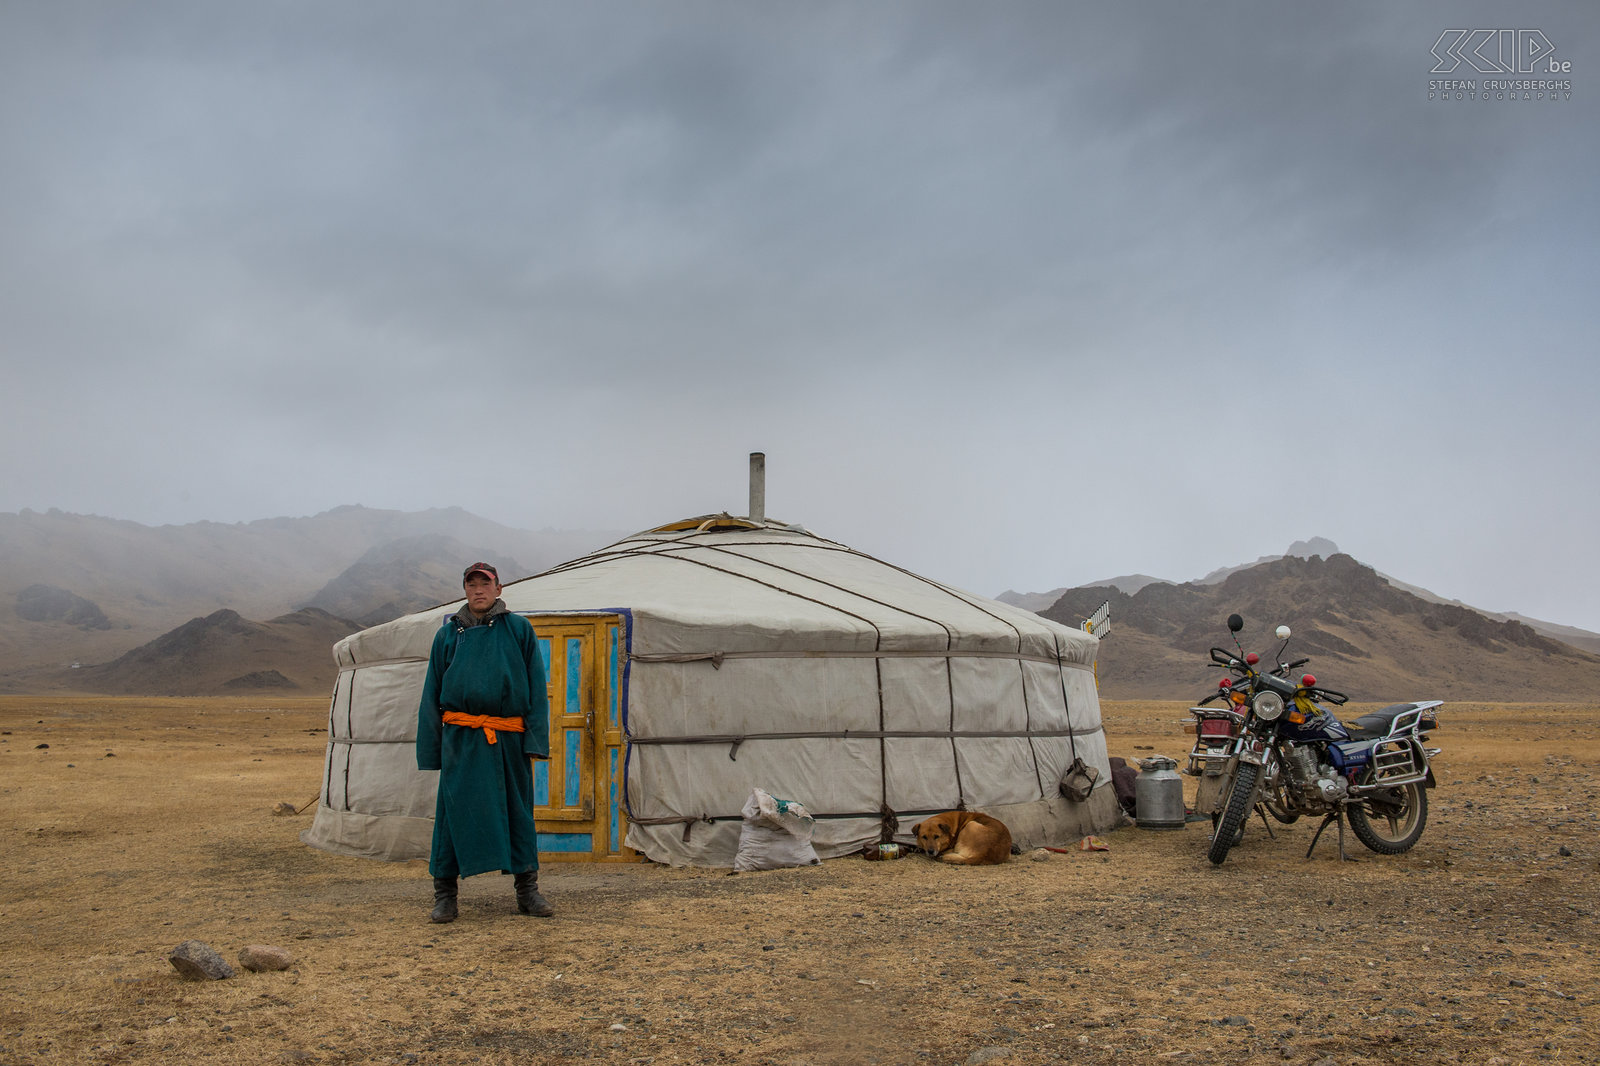 Altai - Ger en nomade Nomaden en hun ger in een vallei in het Altai gebergte. Stefan Cruysberghs